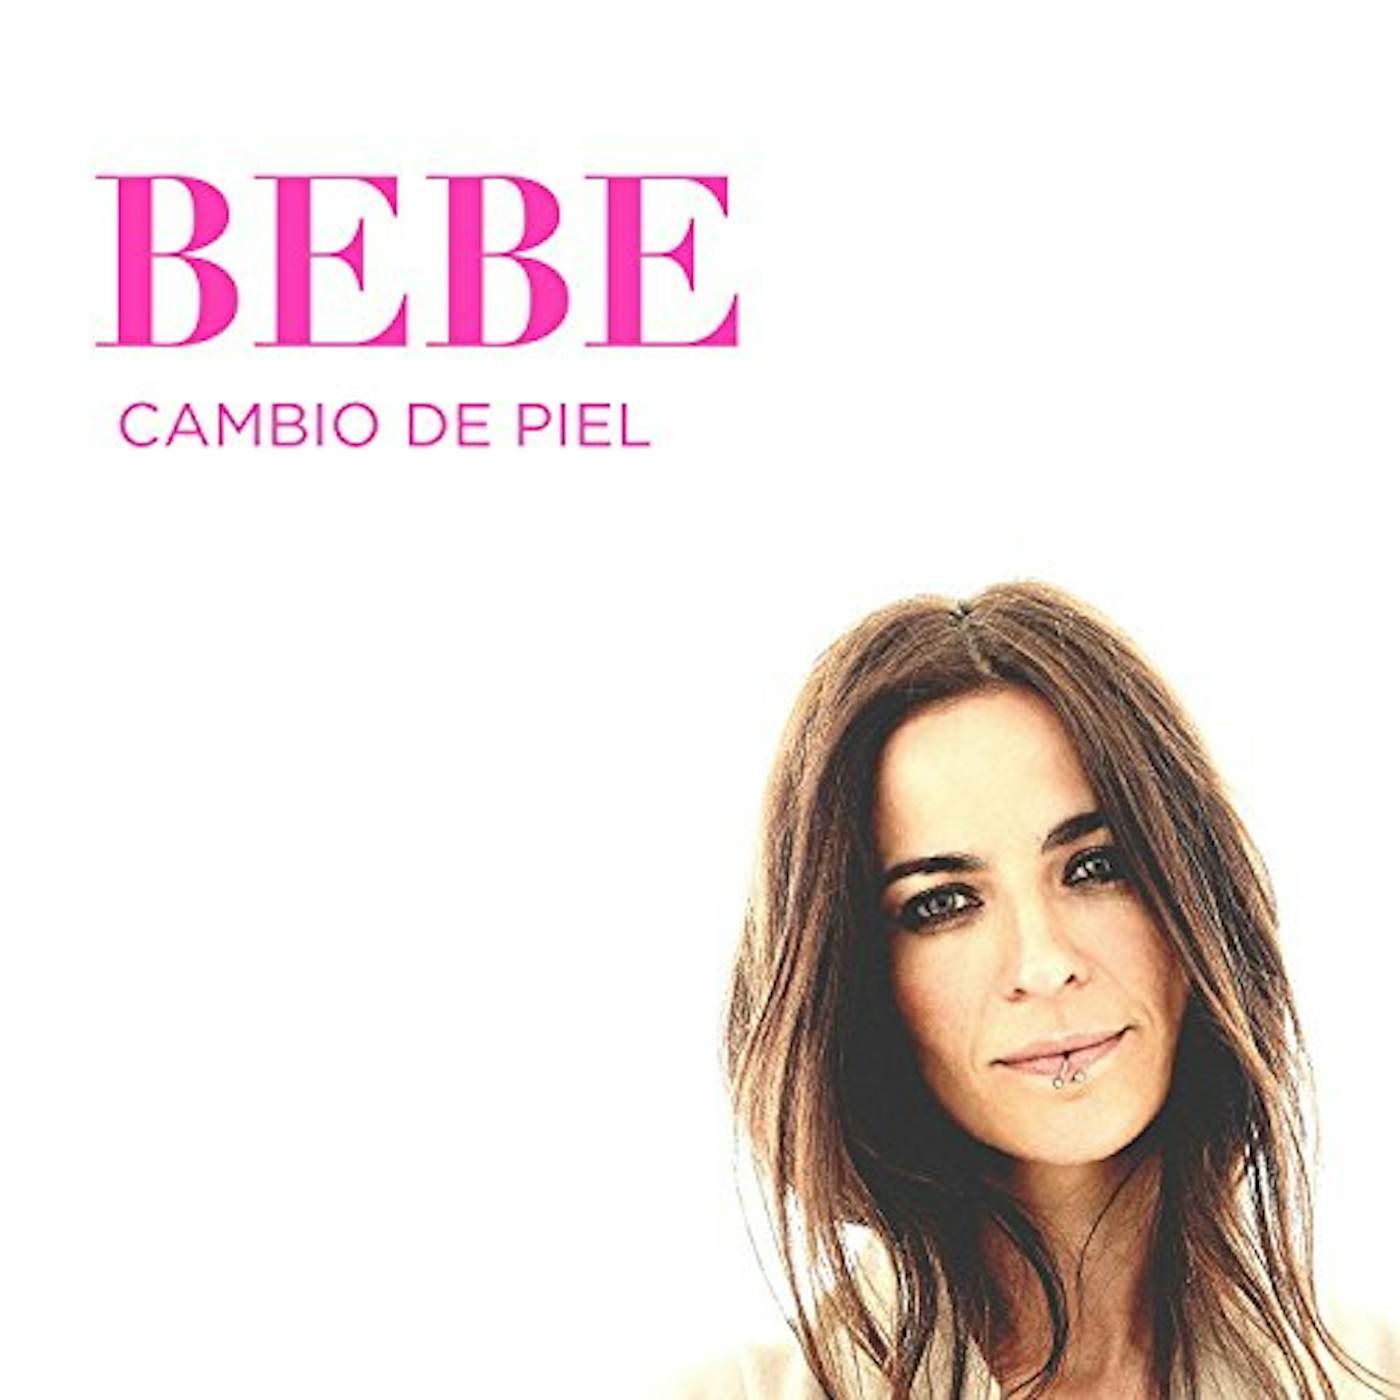 Bebe CAMBIO DE PIEL CD